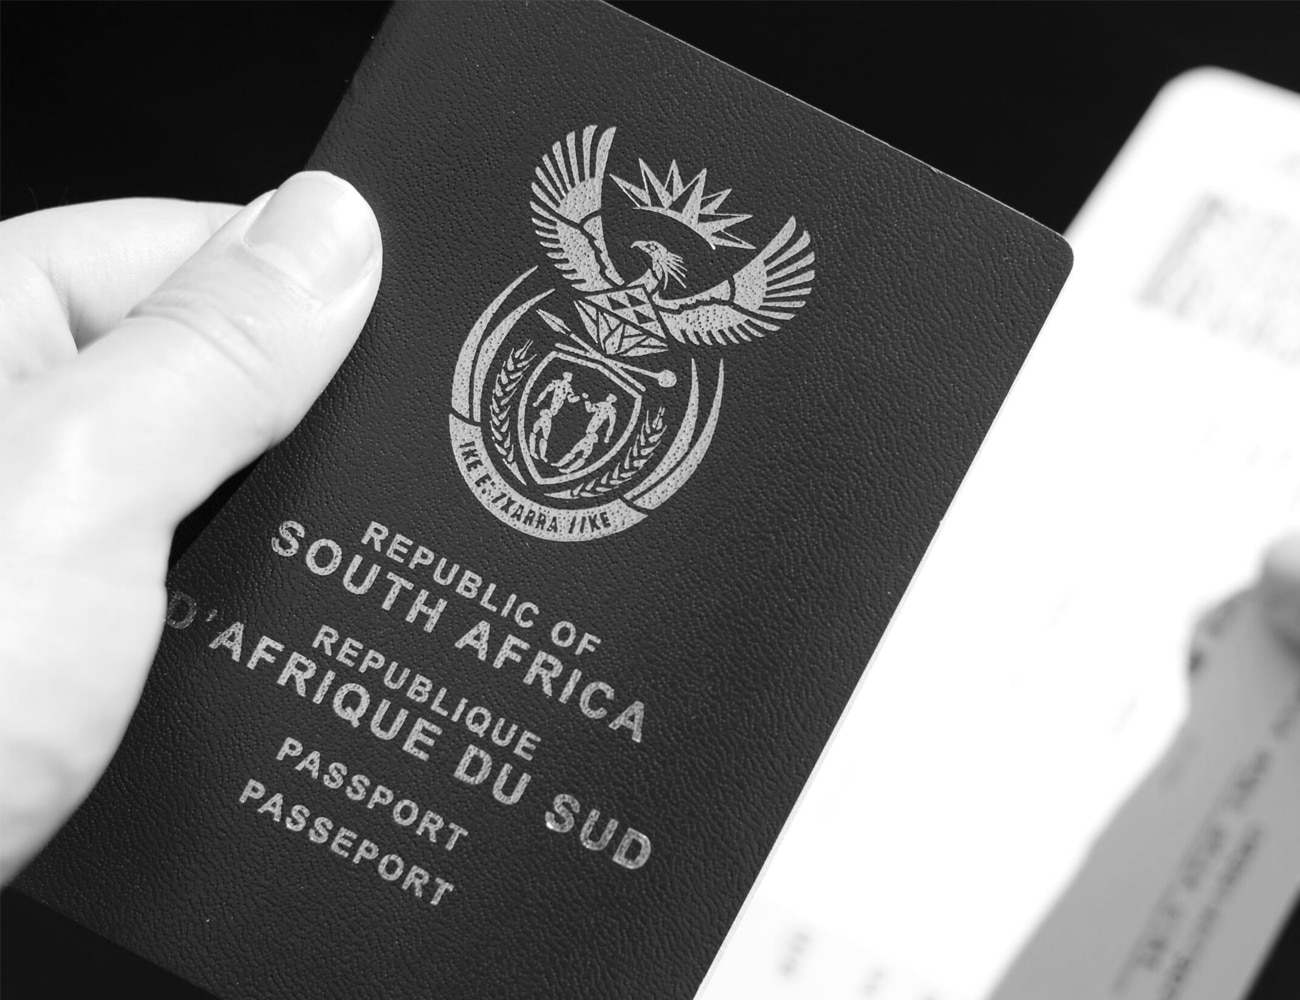 A South African Passport